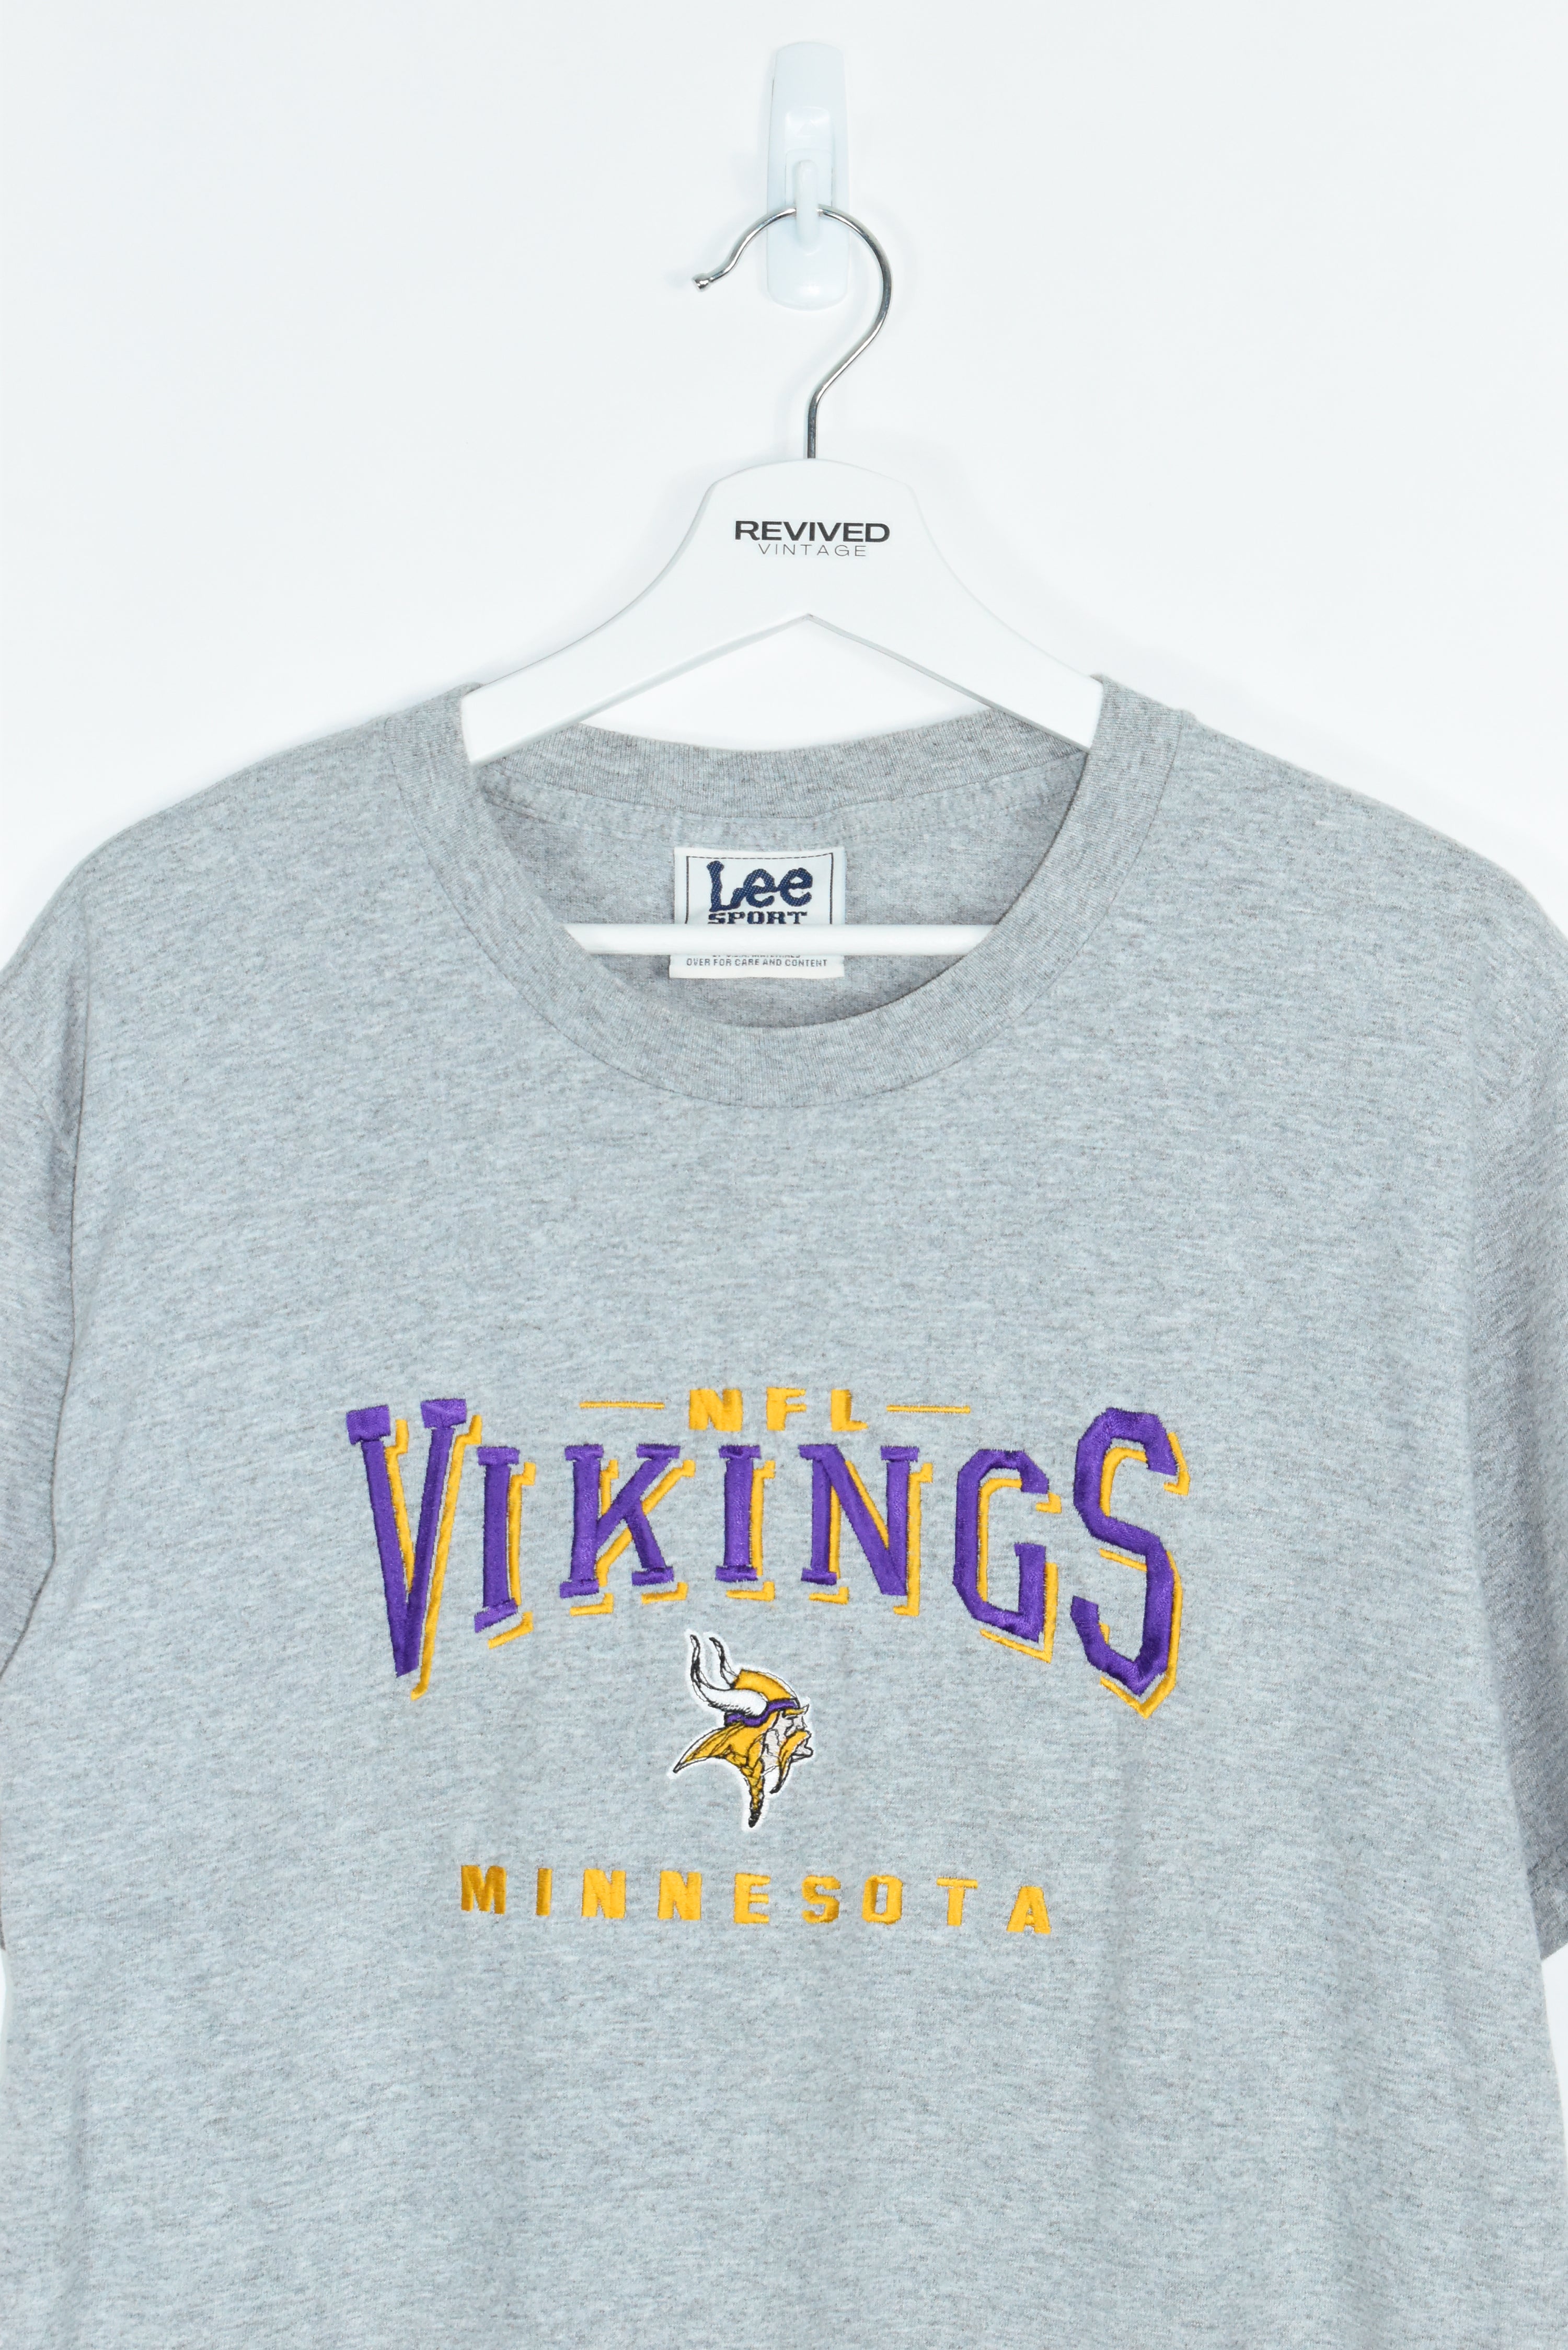 Vintage Lee Sport Embroidery Vikings T Shirt Medium